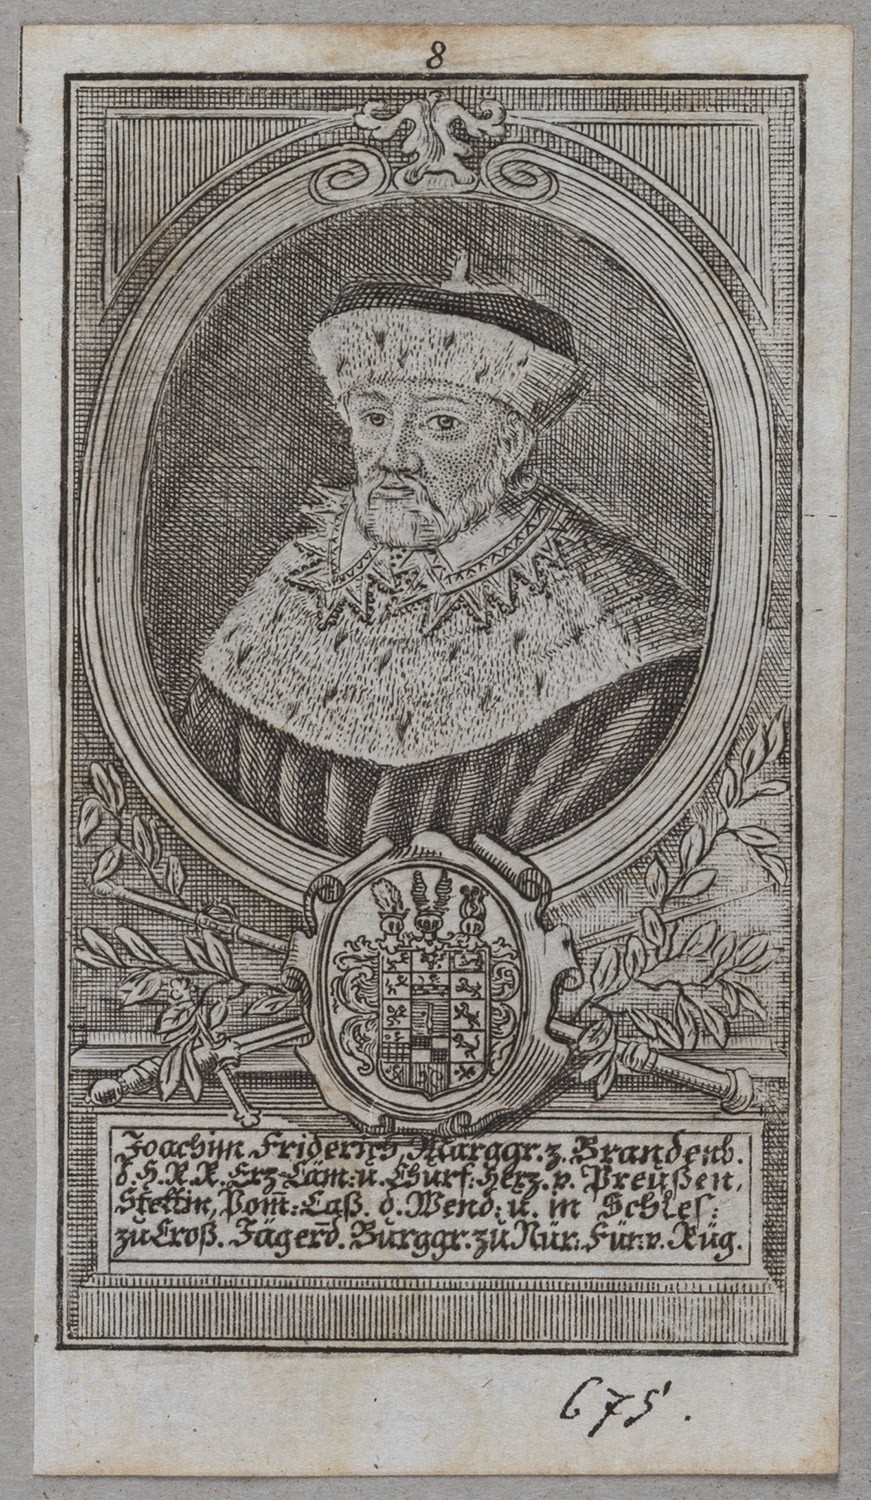 Joachim Friedrich, Kurfürst von Brandenburg (1546-1608, reg.1598-1608) (Landesgeschichtliche Vereinigung für die Mark Brandenburg e.V., Archiv CC BY)